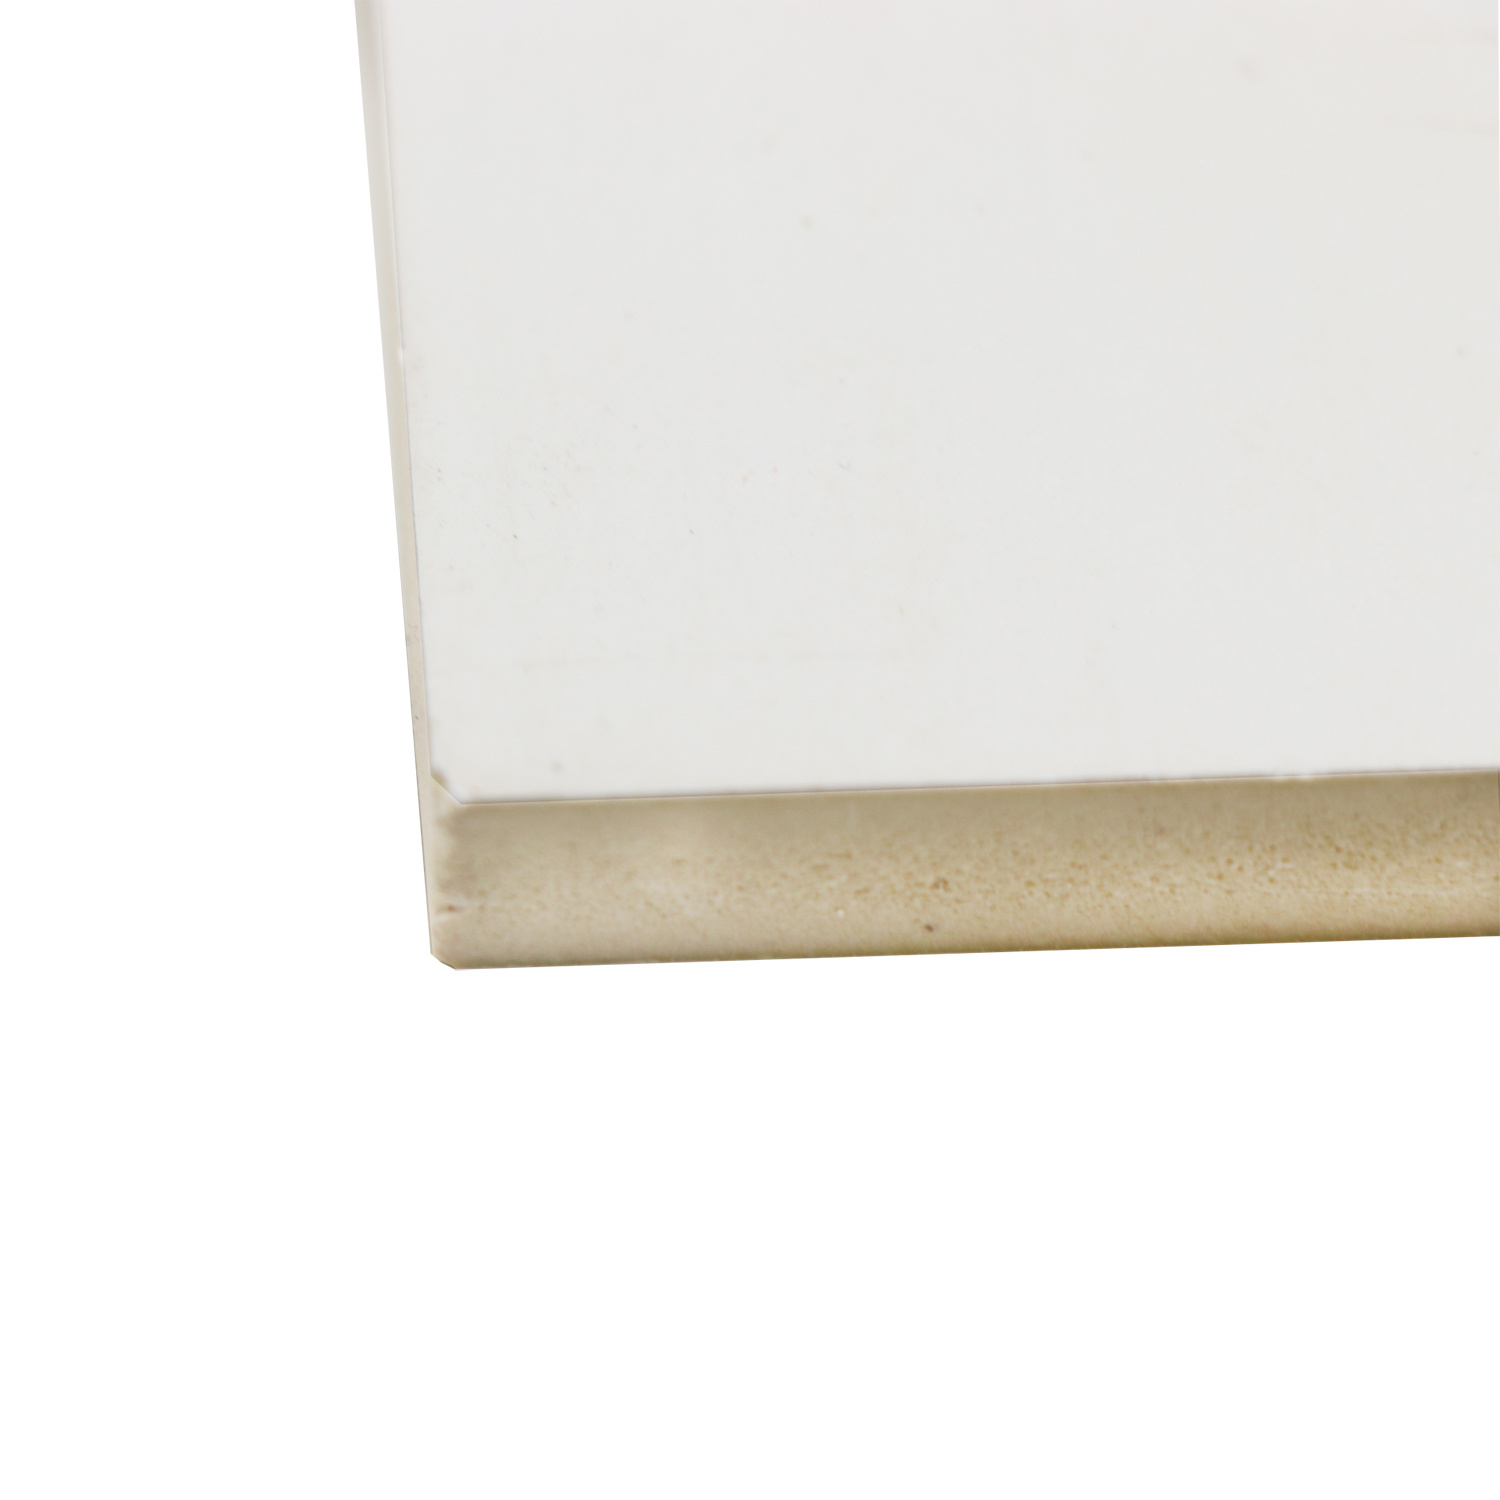 Excellent Grade White Melamine Faced MDF Board Stone Grain Fiberboard for Wall Panel